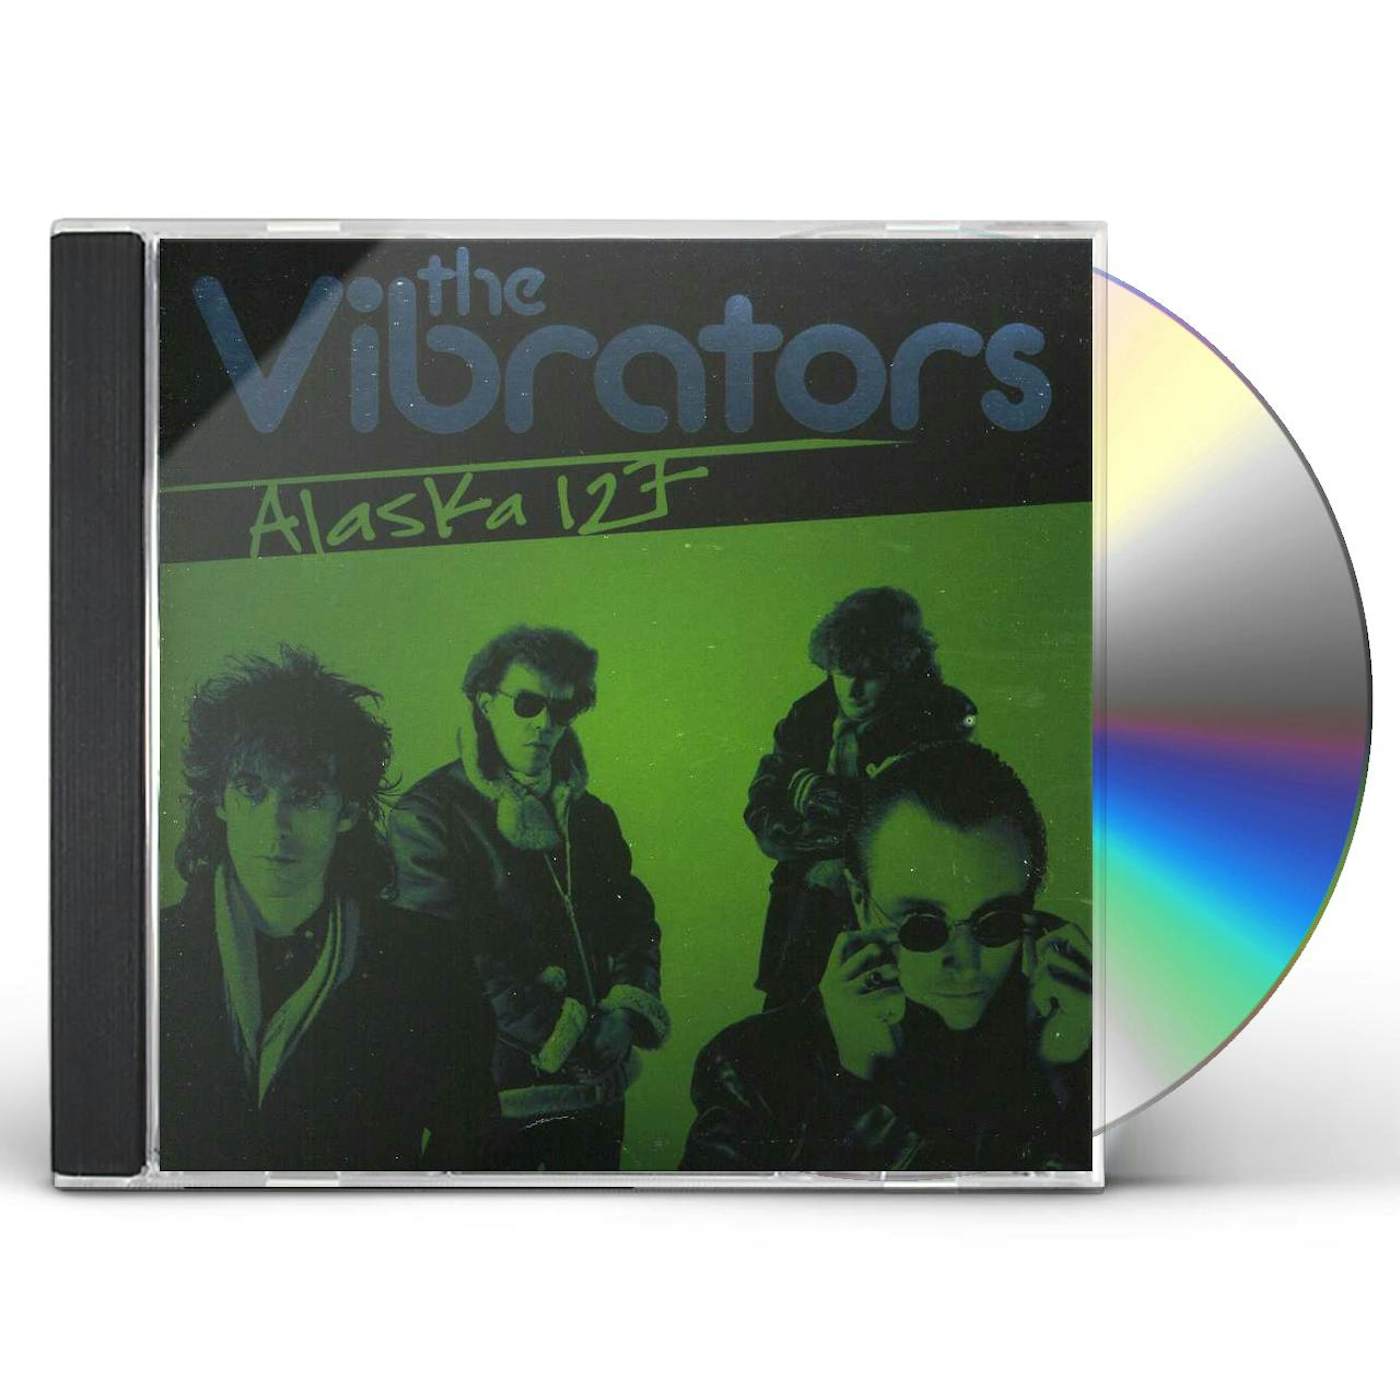 The Vibrators ALASKA 127 CD